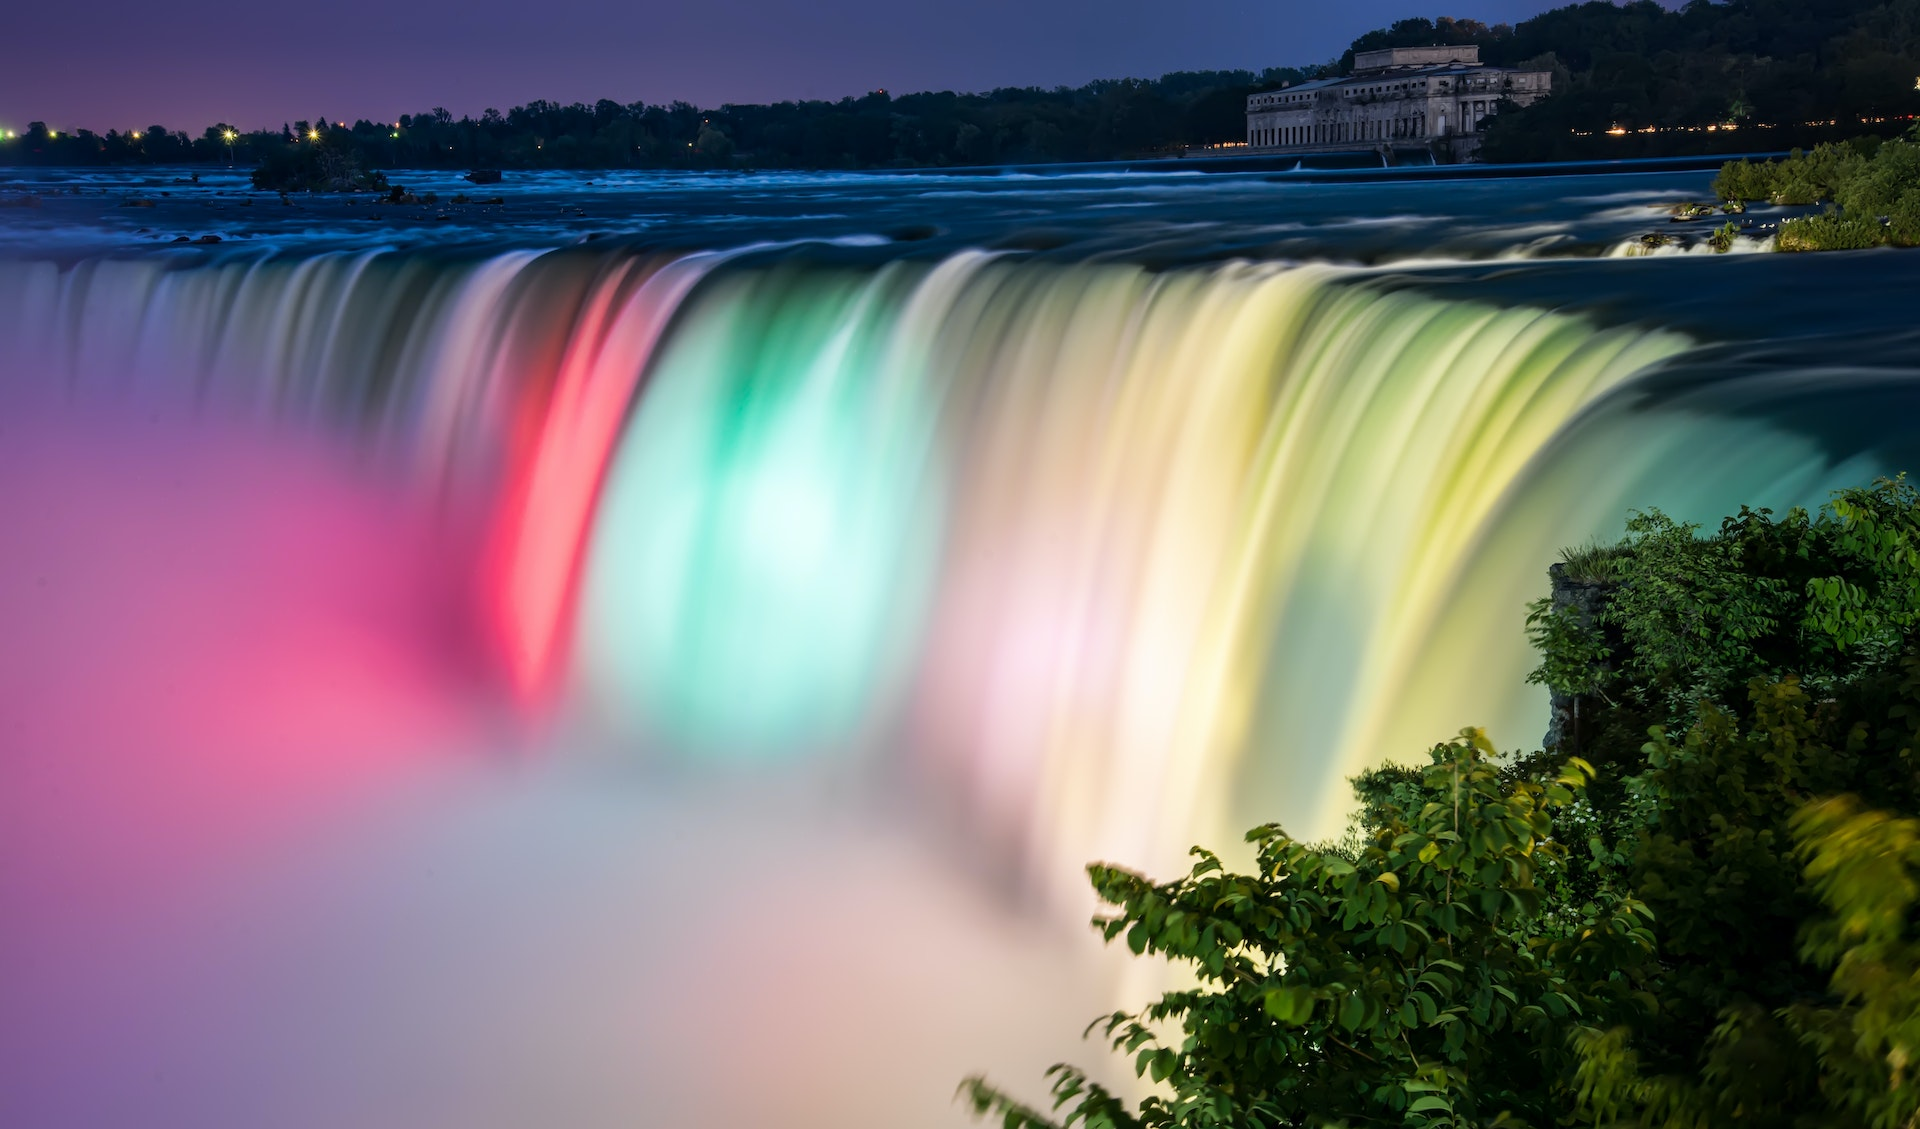 Visiter les chutes du Niagara : guide pratique et astuces pour un sejour inoubliable